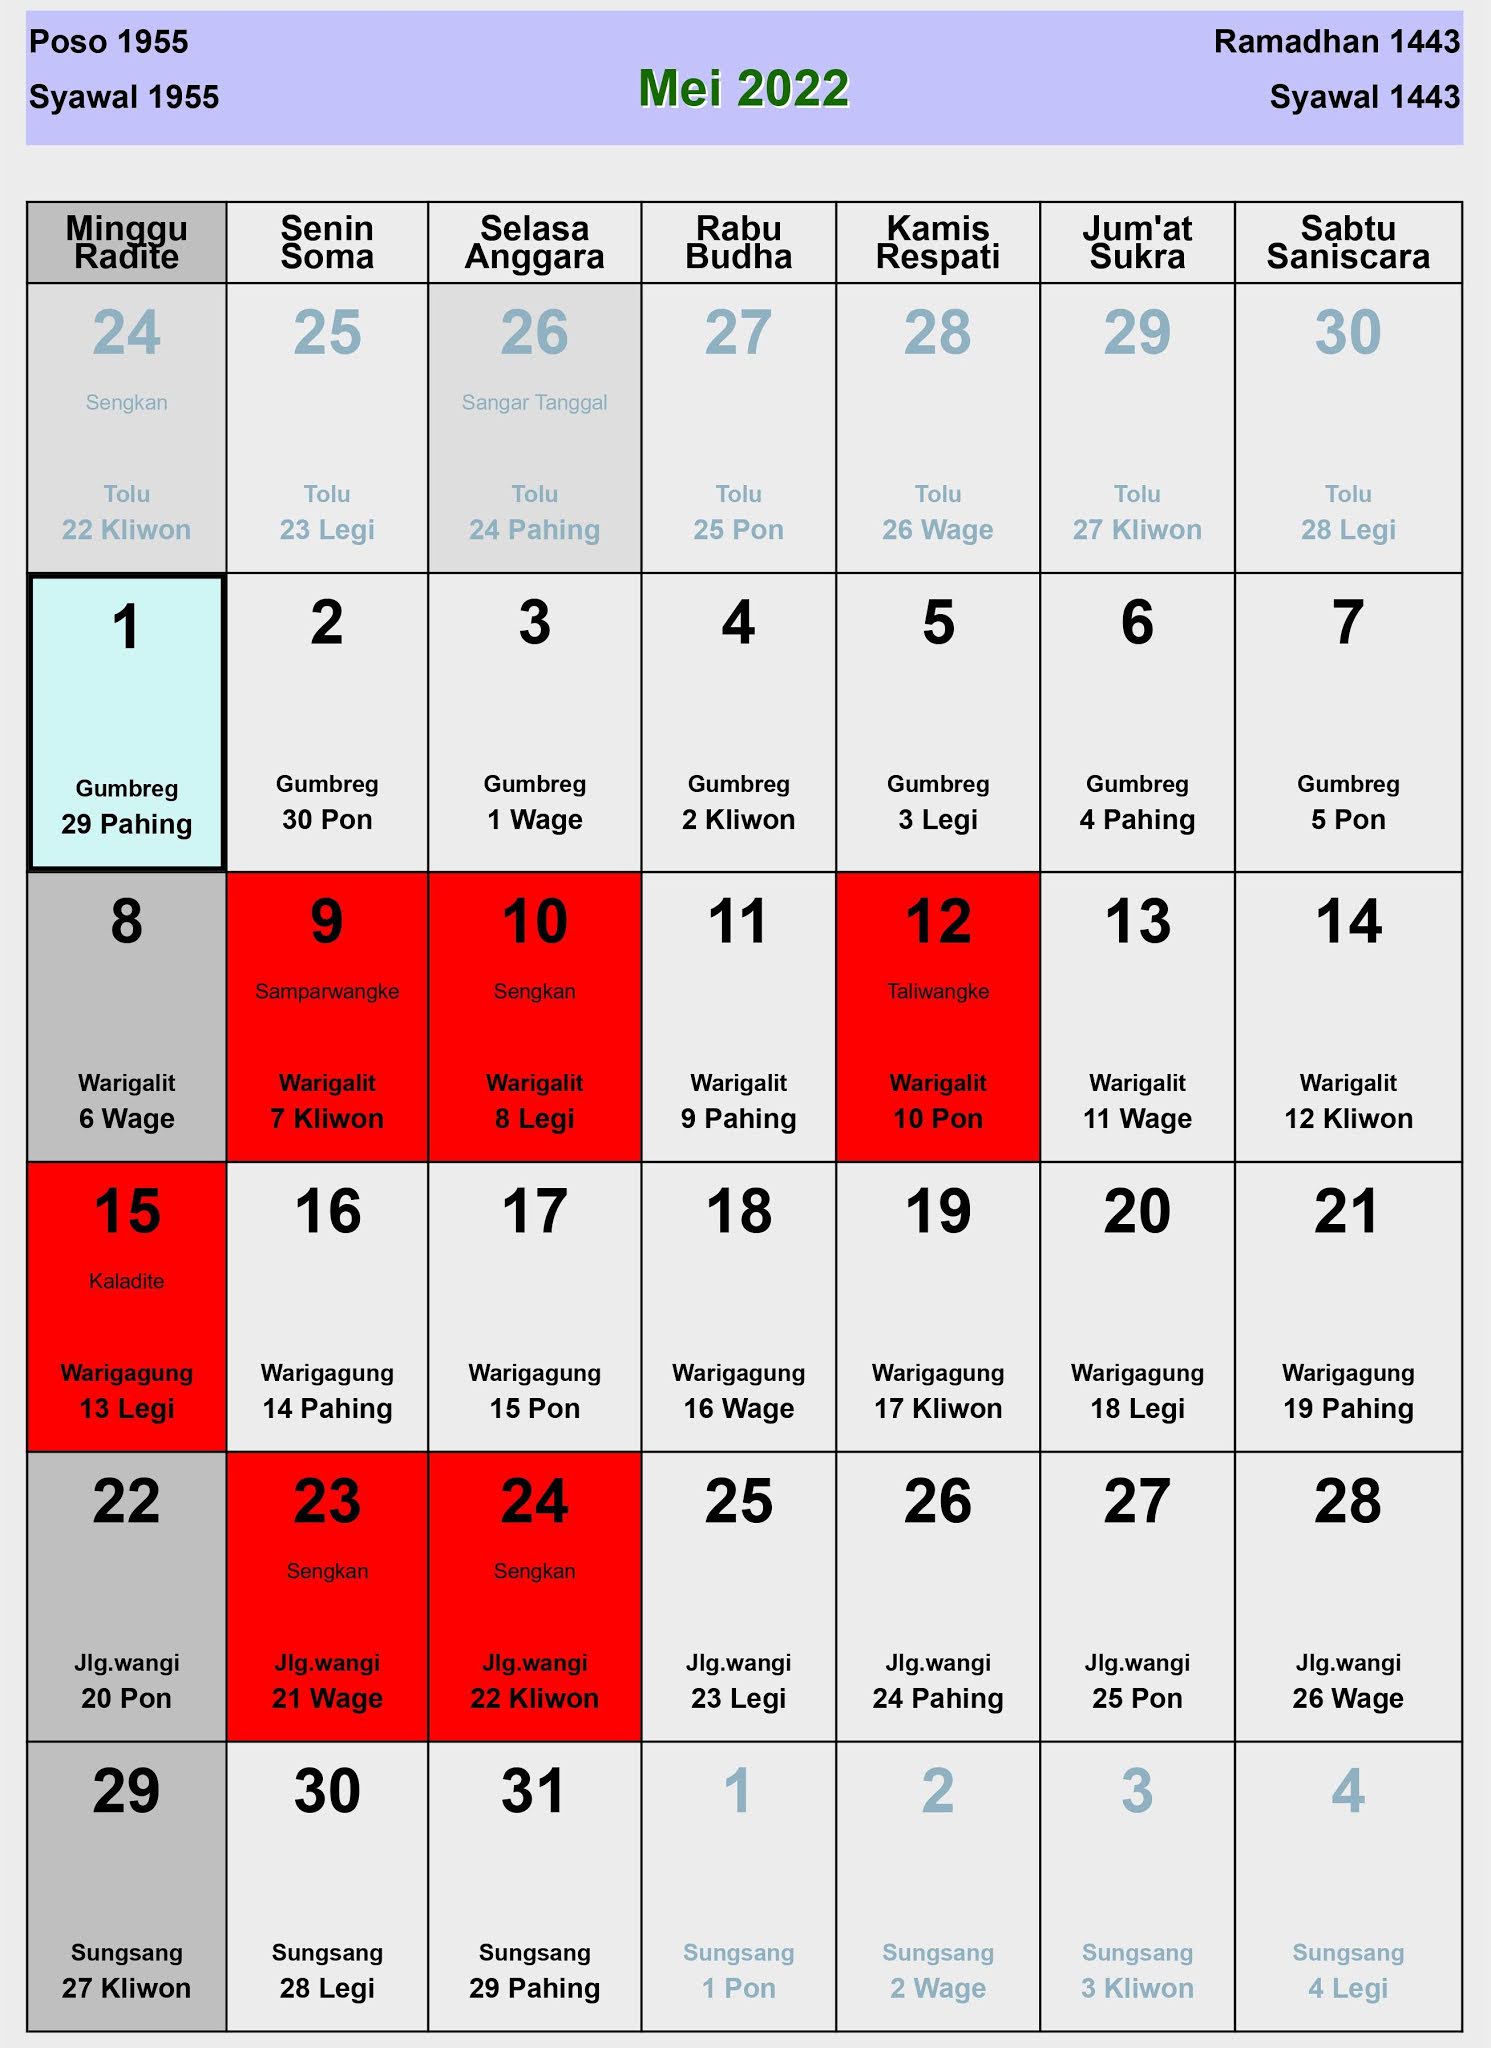 Kalender jawa mei 2021